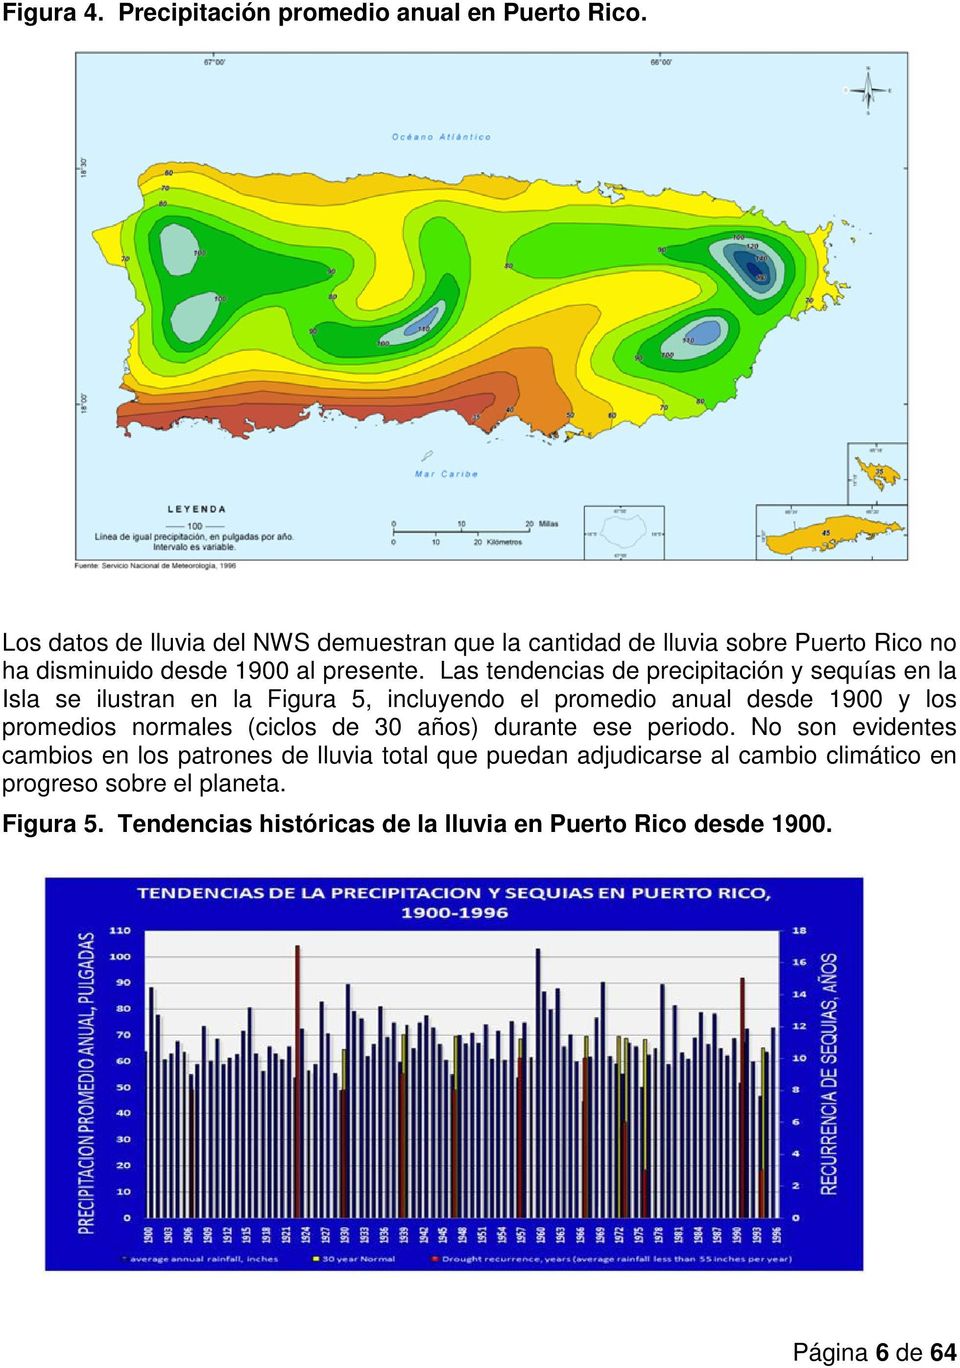 Las tendencias de precipitación y sequías en la Isla se ilustran en la Figura 5, incluyendo el promedio anual desde 1900 y los promedios normales